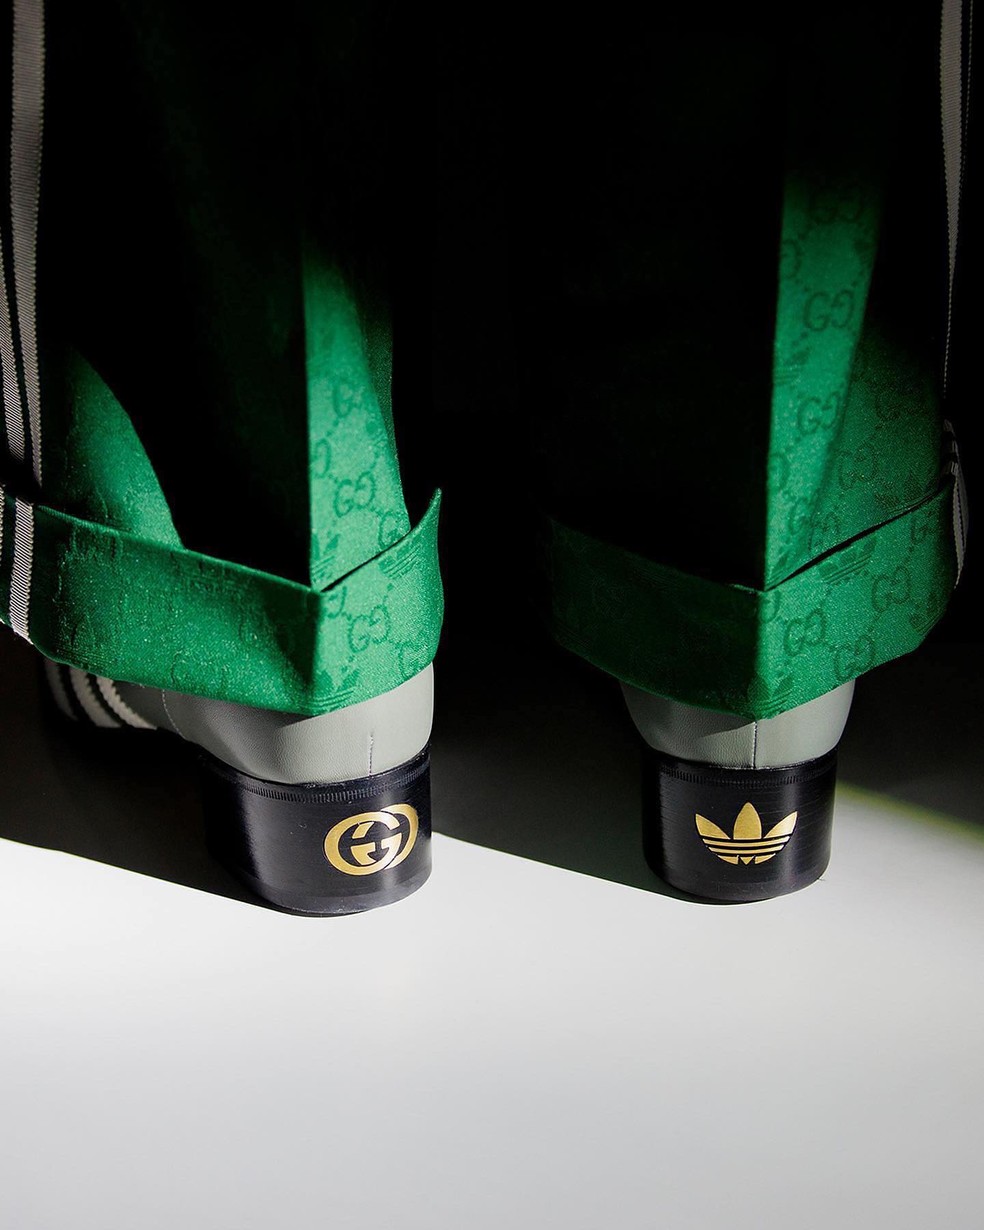 Sapato da collab entre Gucci e adidas — Foto: Divulgação